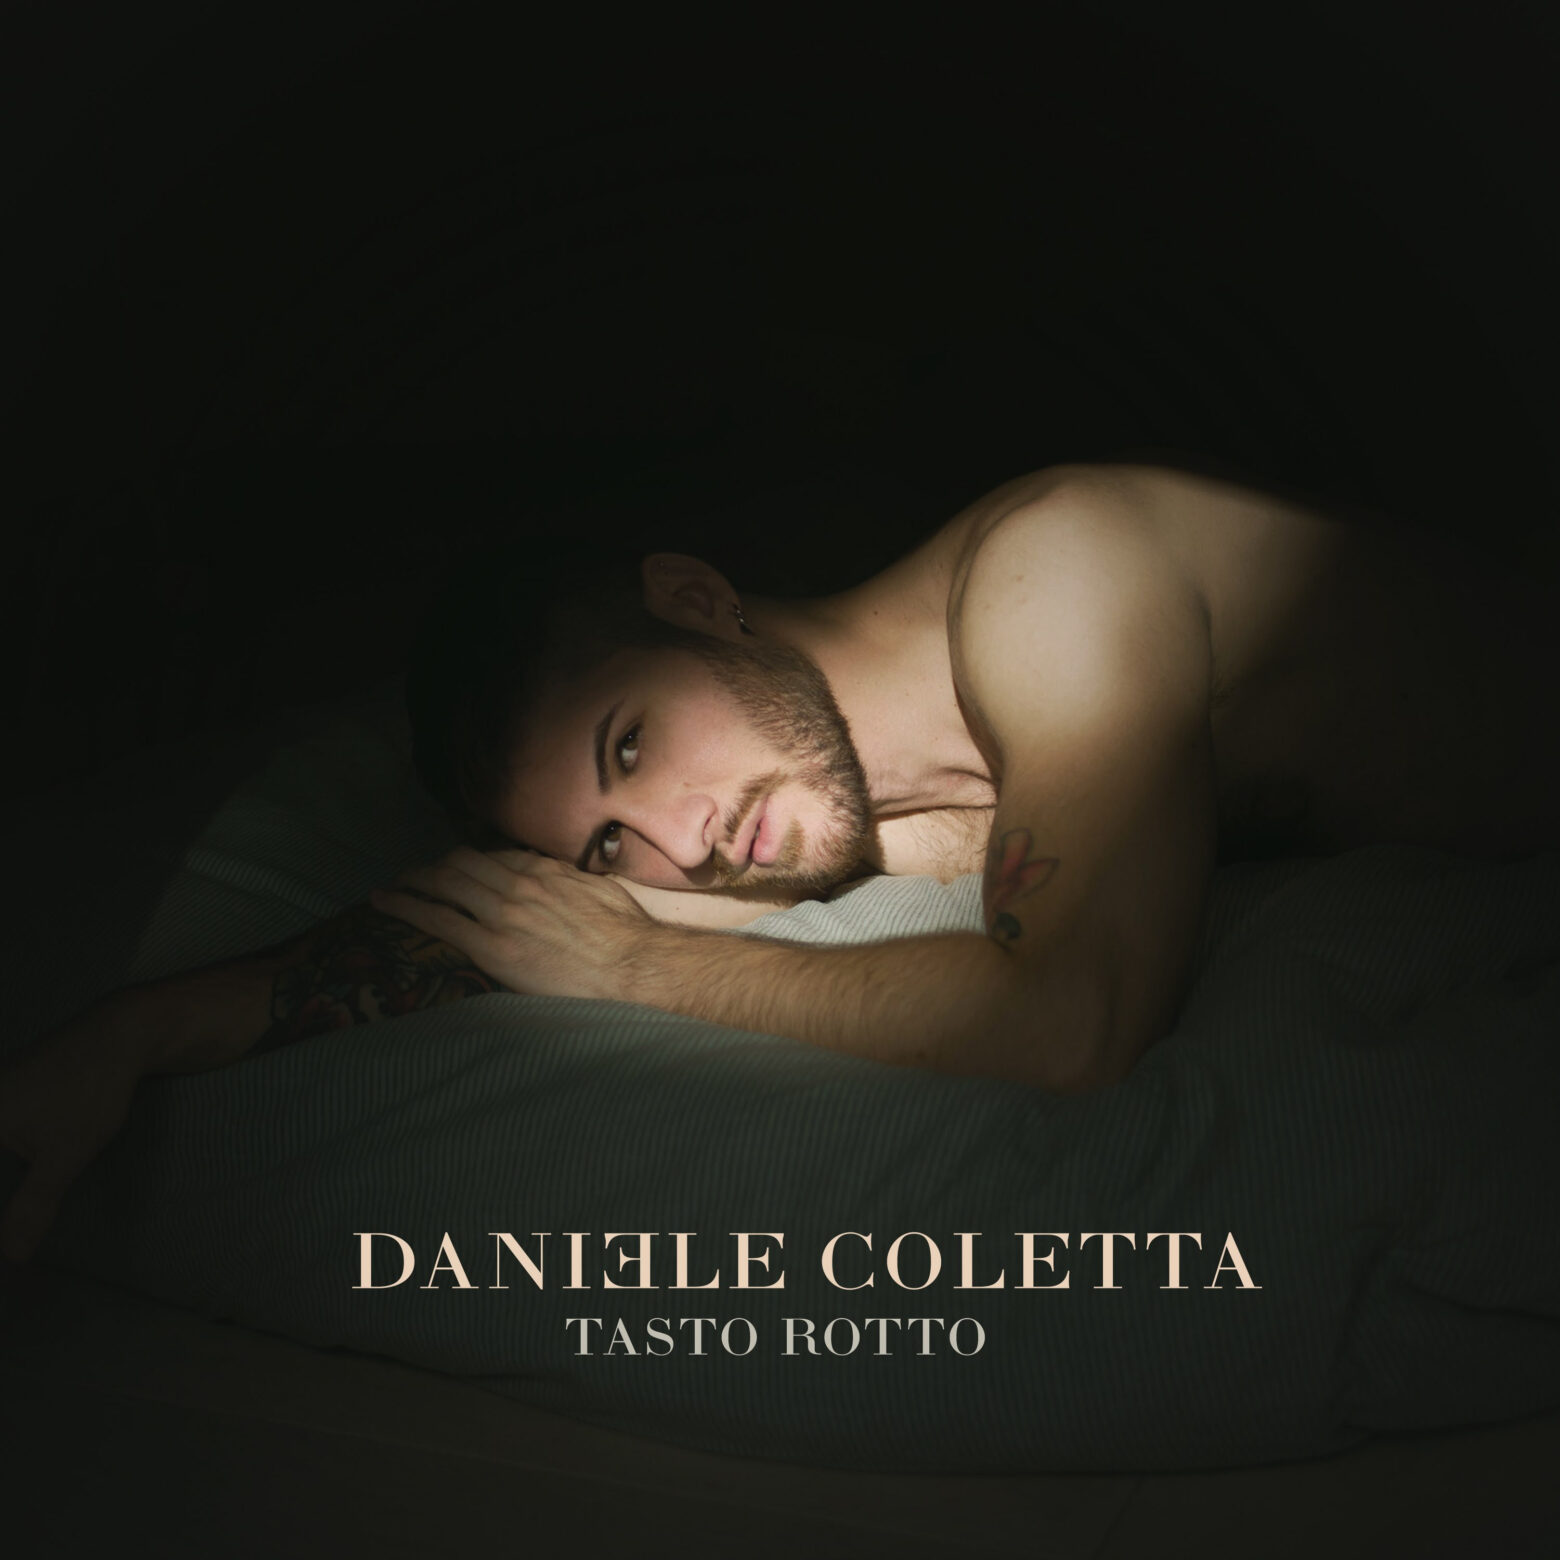 DANIELE COLETTA, da oggi è in radio il nuovo singolo “TASTO ROTTO”